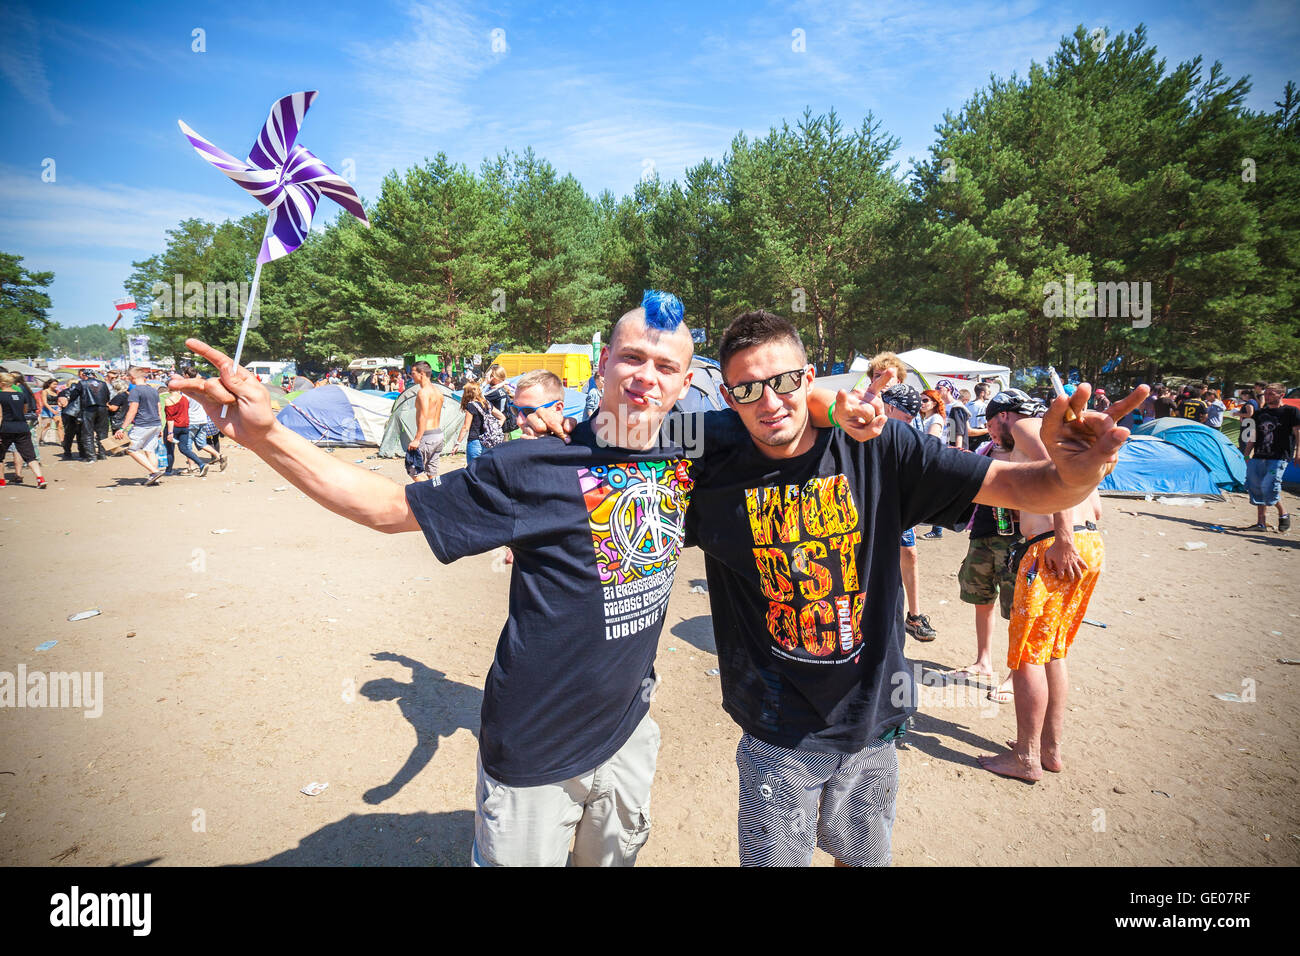 Le persone felici del XXI festival di Woodstock Polonia (Przystanek Woodstock). Foto Stock